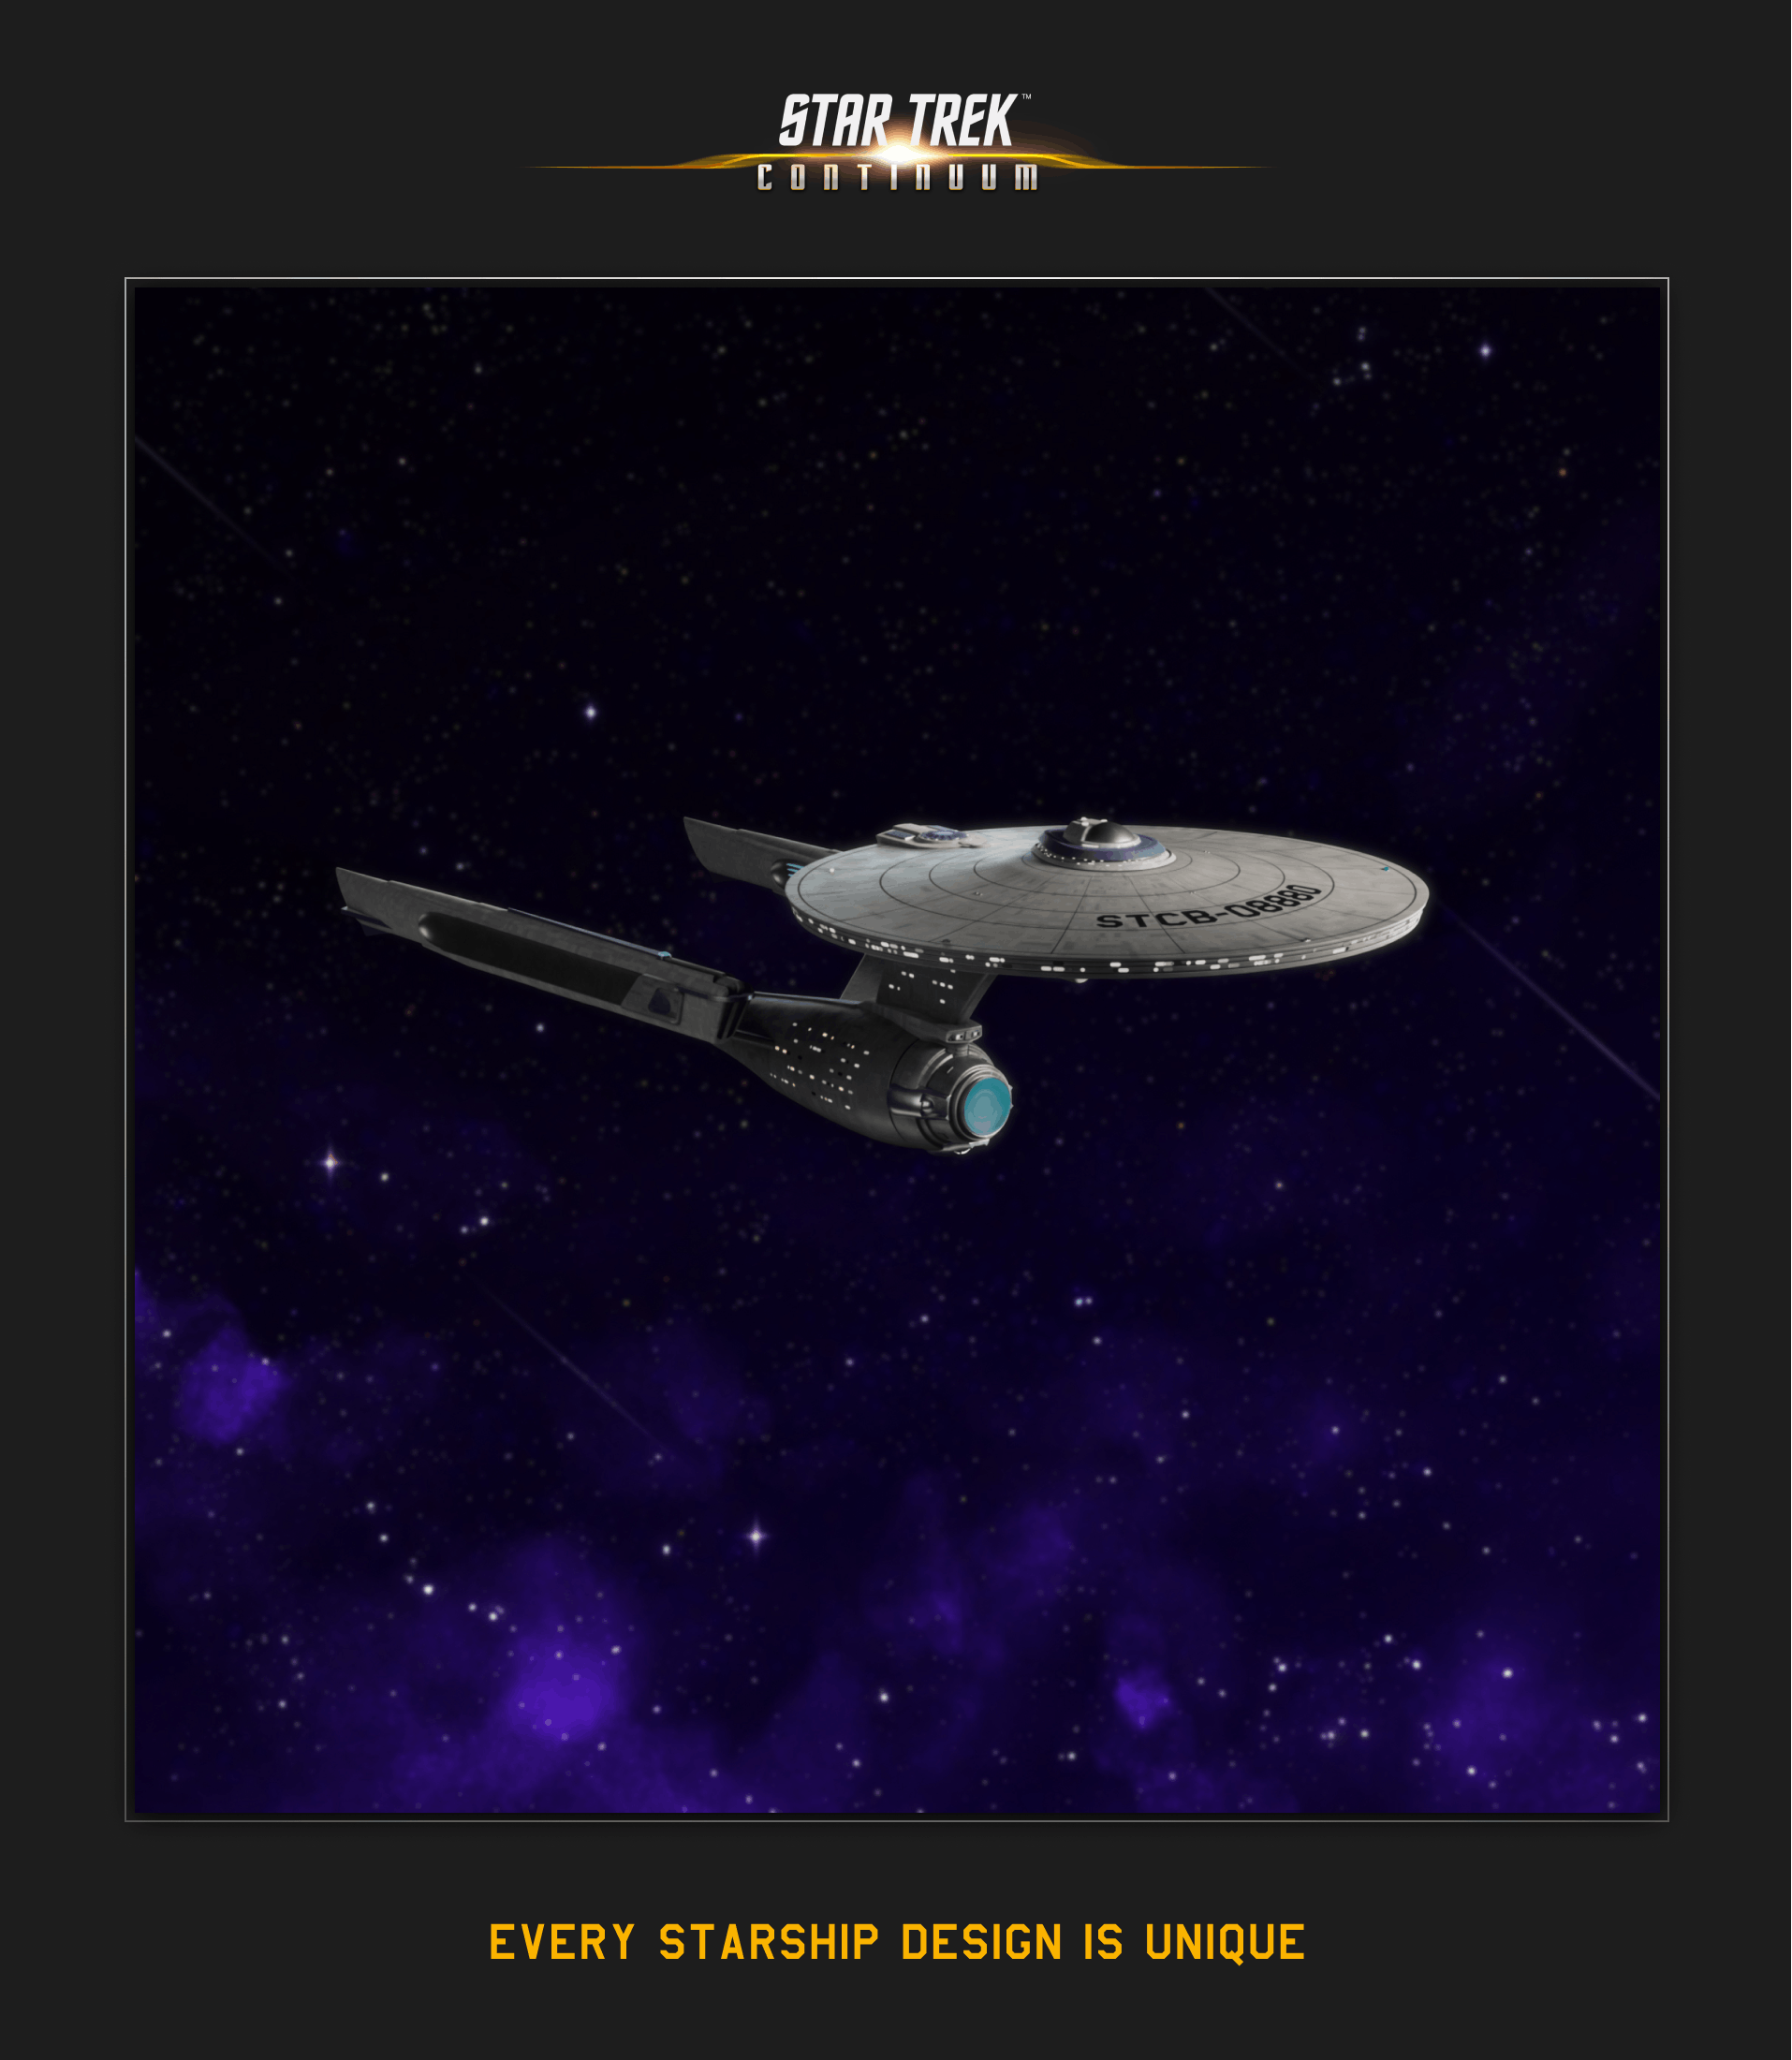 Star Trek Continuum